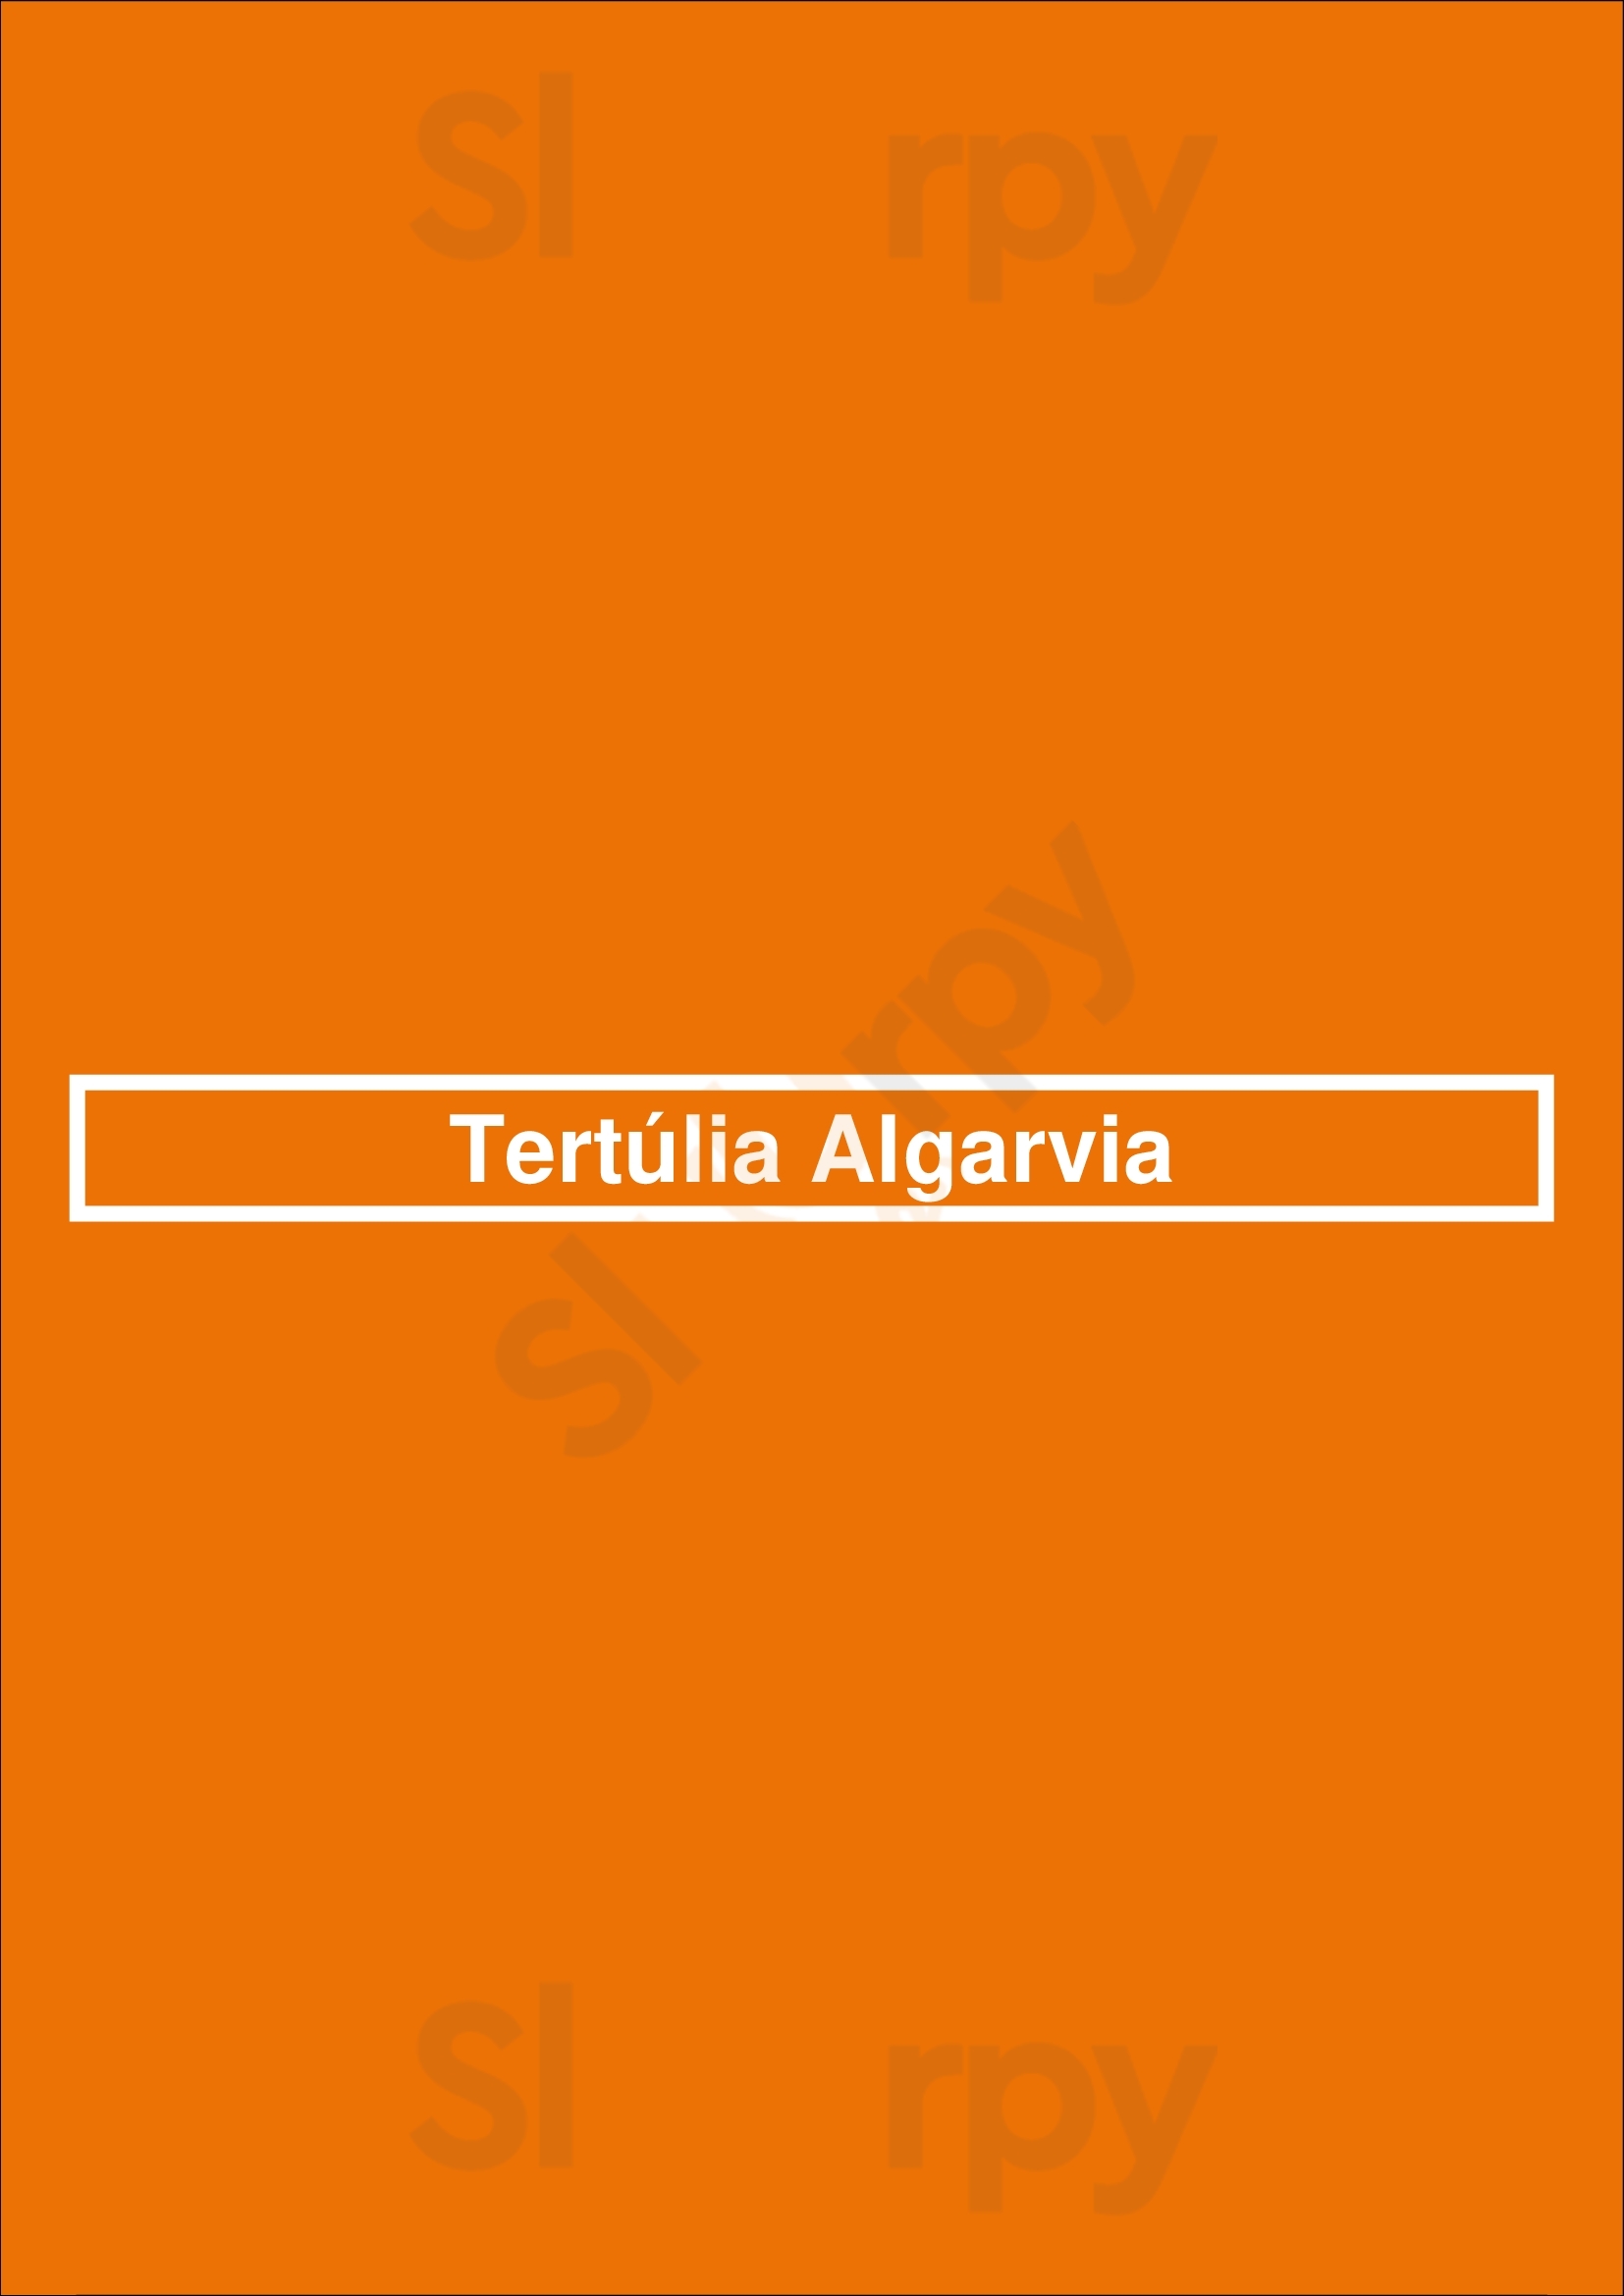 Tertúlia Algarvia Faro Menu - 1